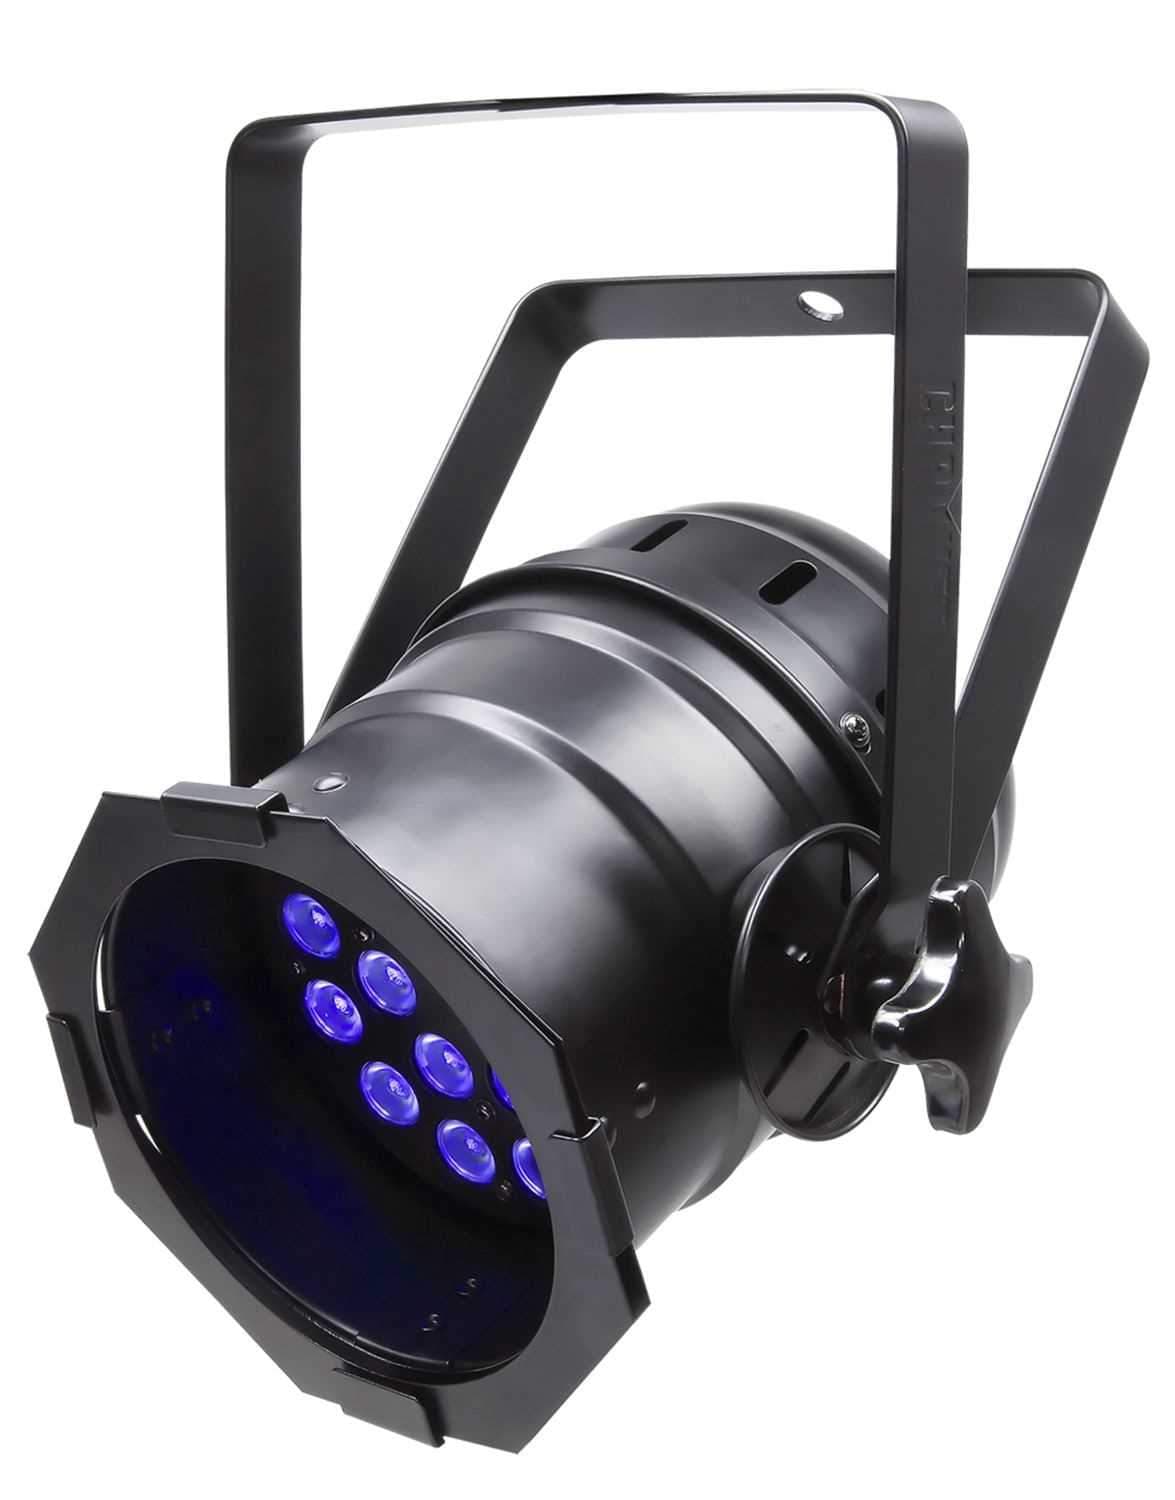 Chauvet LED-PAR-38-18UVB LED DMX Black Light Par - PSSL ProSound and Stage Lighting